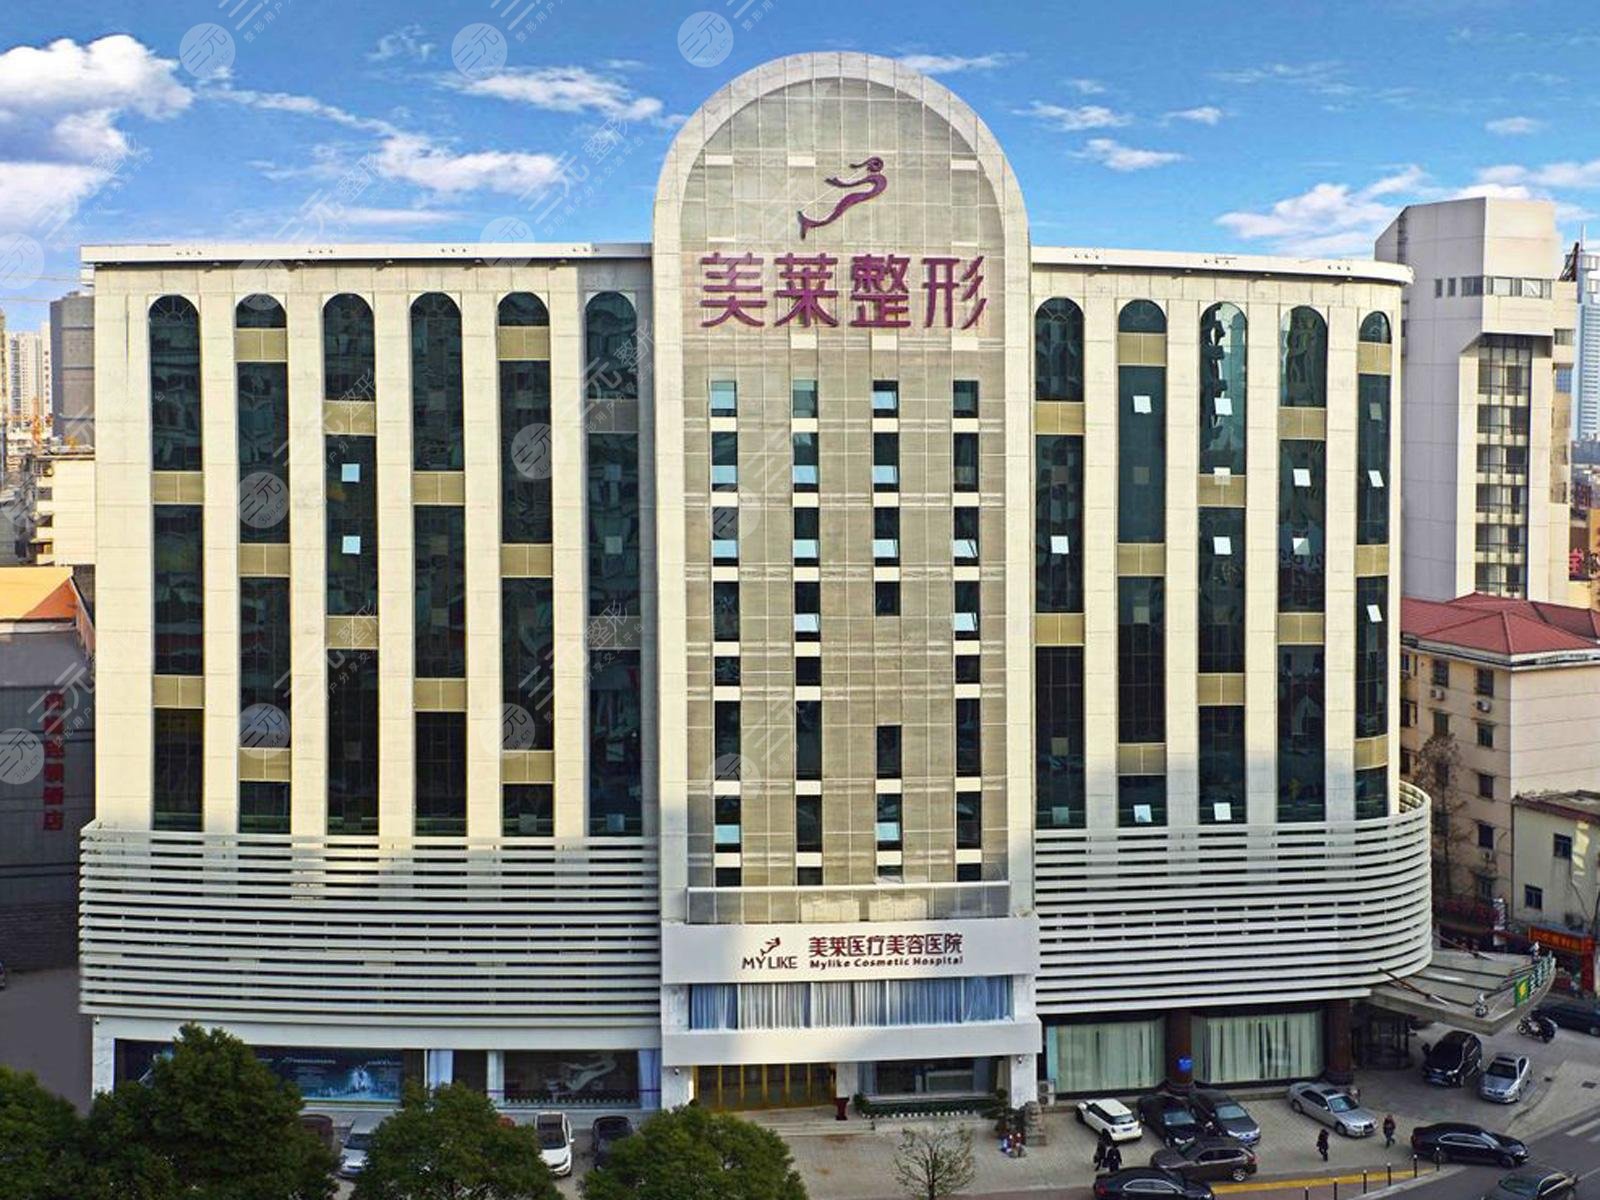 上海隆胸手术好的(整形)医院排名:九院、时光等